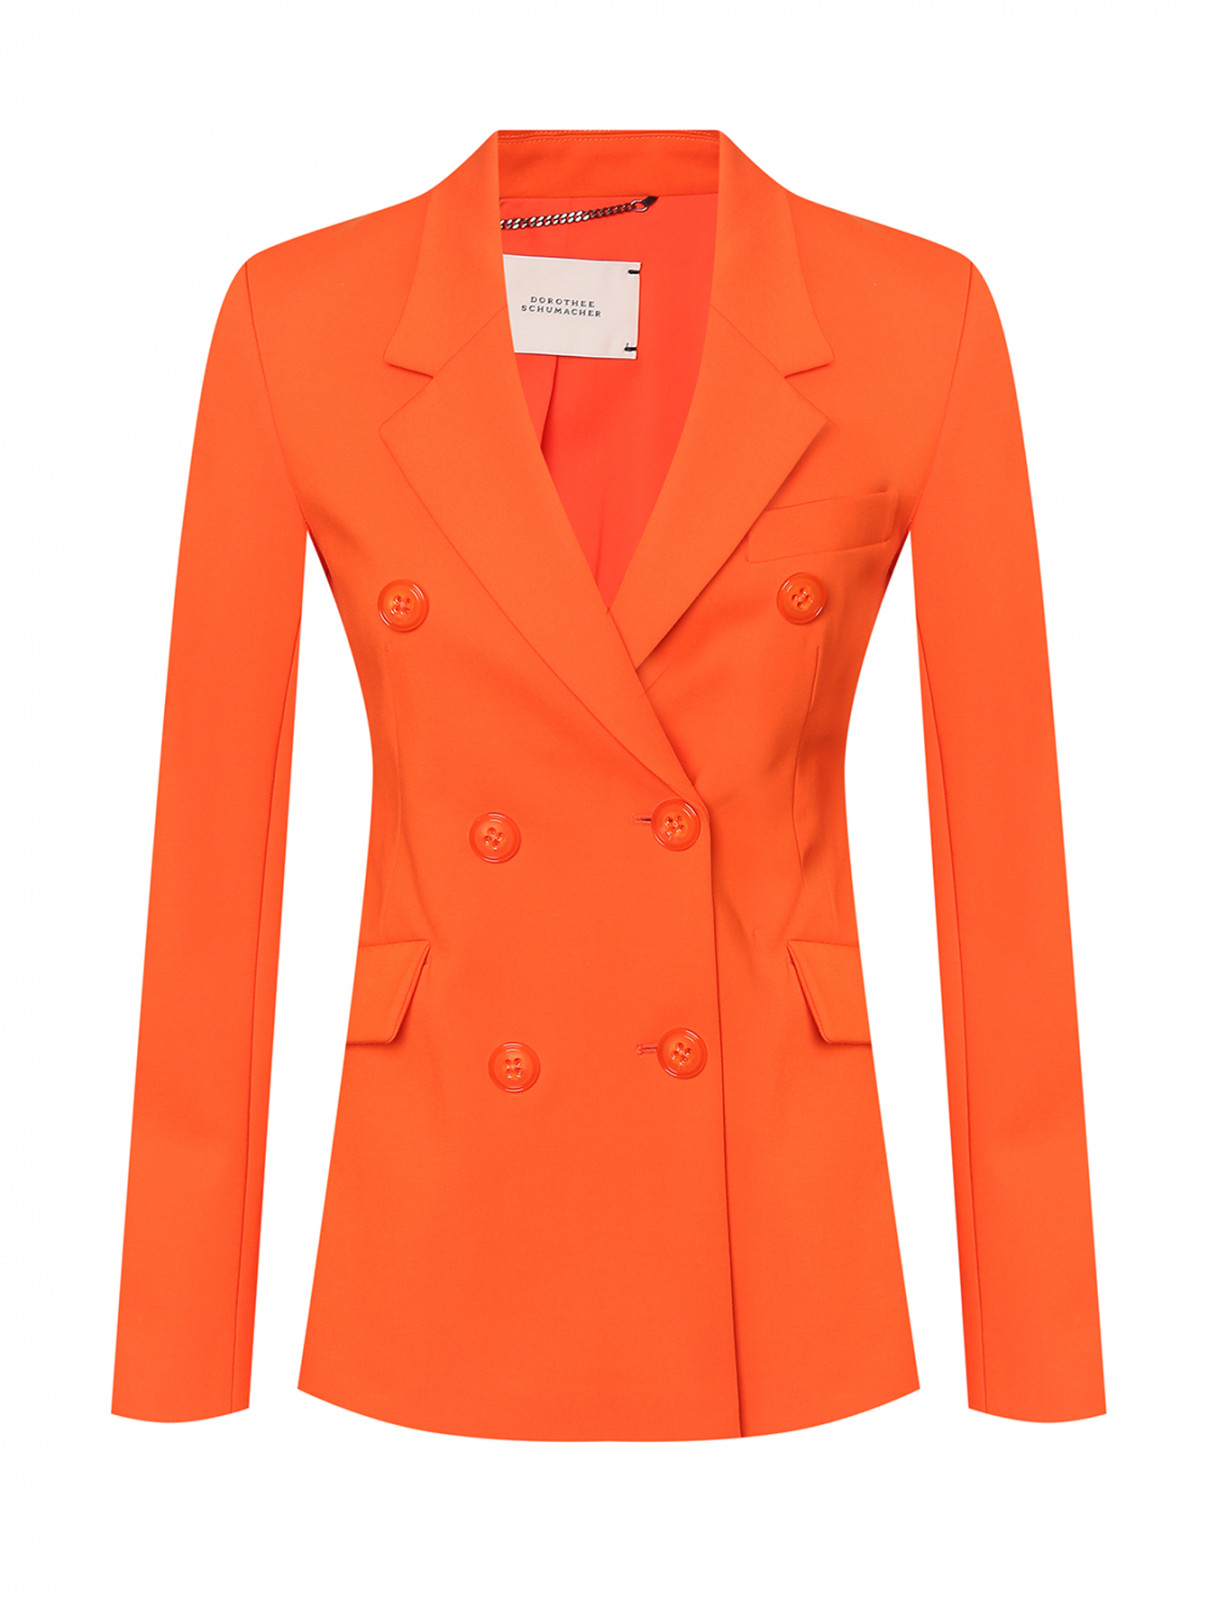 Двубортный жакет с карманами Dorothee Schumacher  –  Общий вид  – Цвет:  Оранжевый